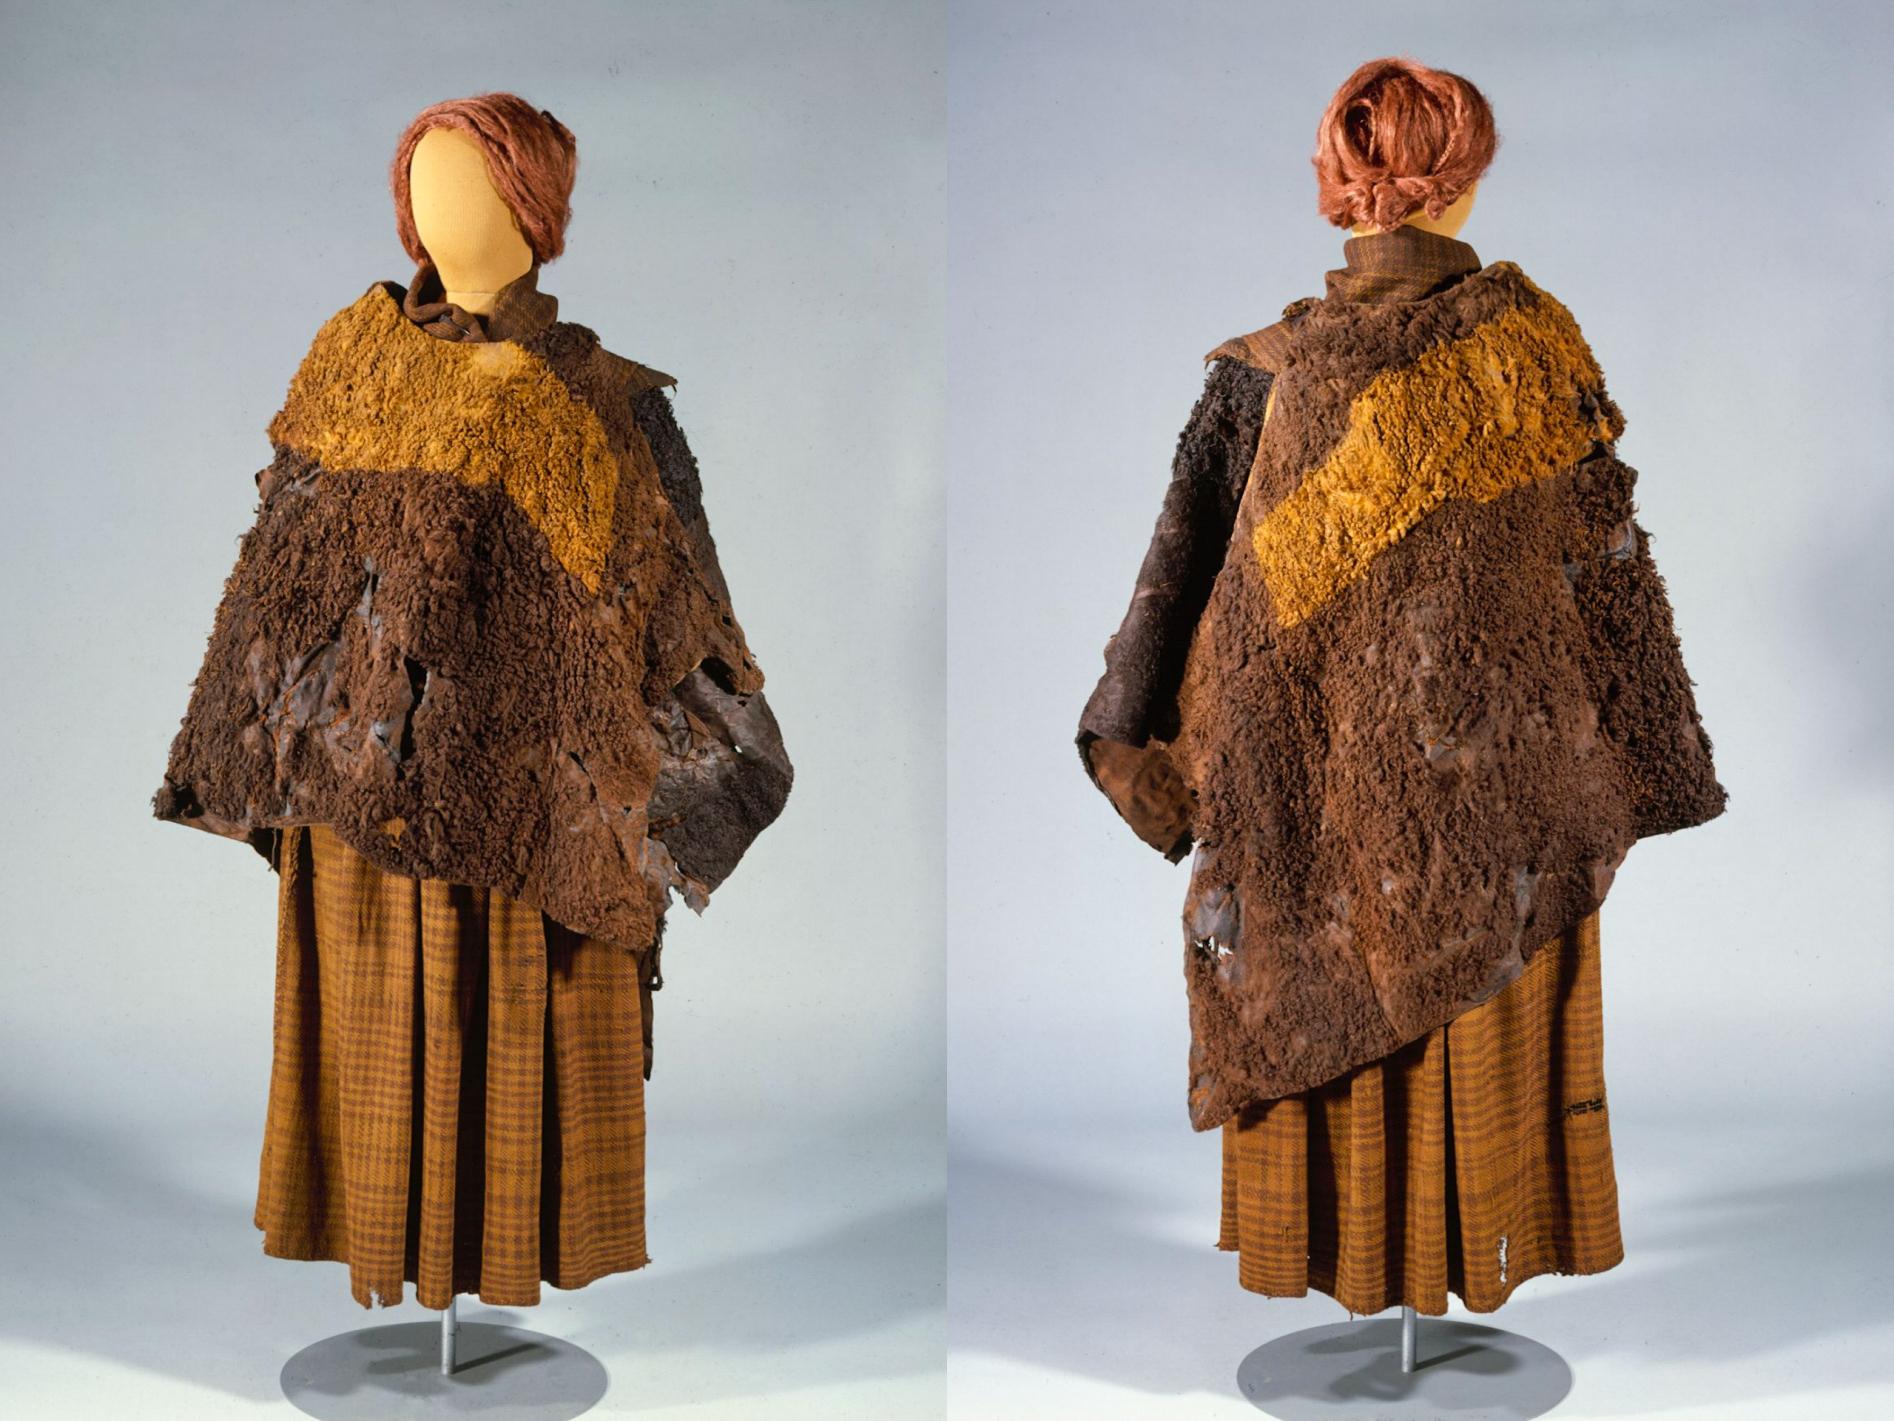 Raba-laiba Huldremose naise riietus 2. sajandist eKr, mis koosneb 2 karusnahast mantlist, sallist ja seelikust.